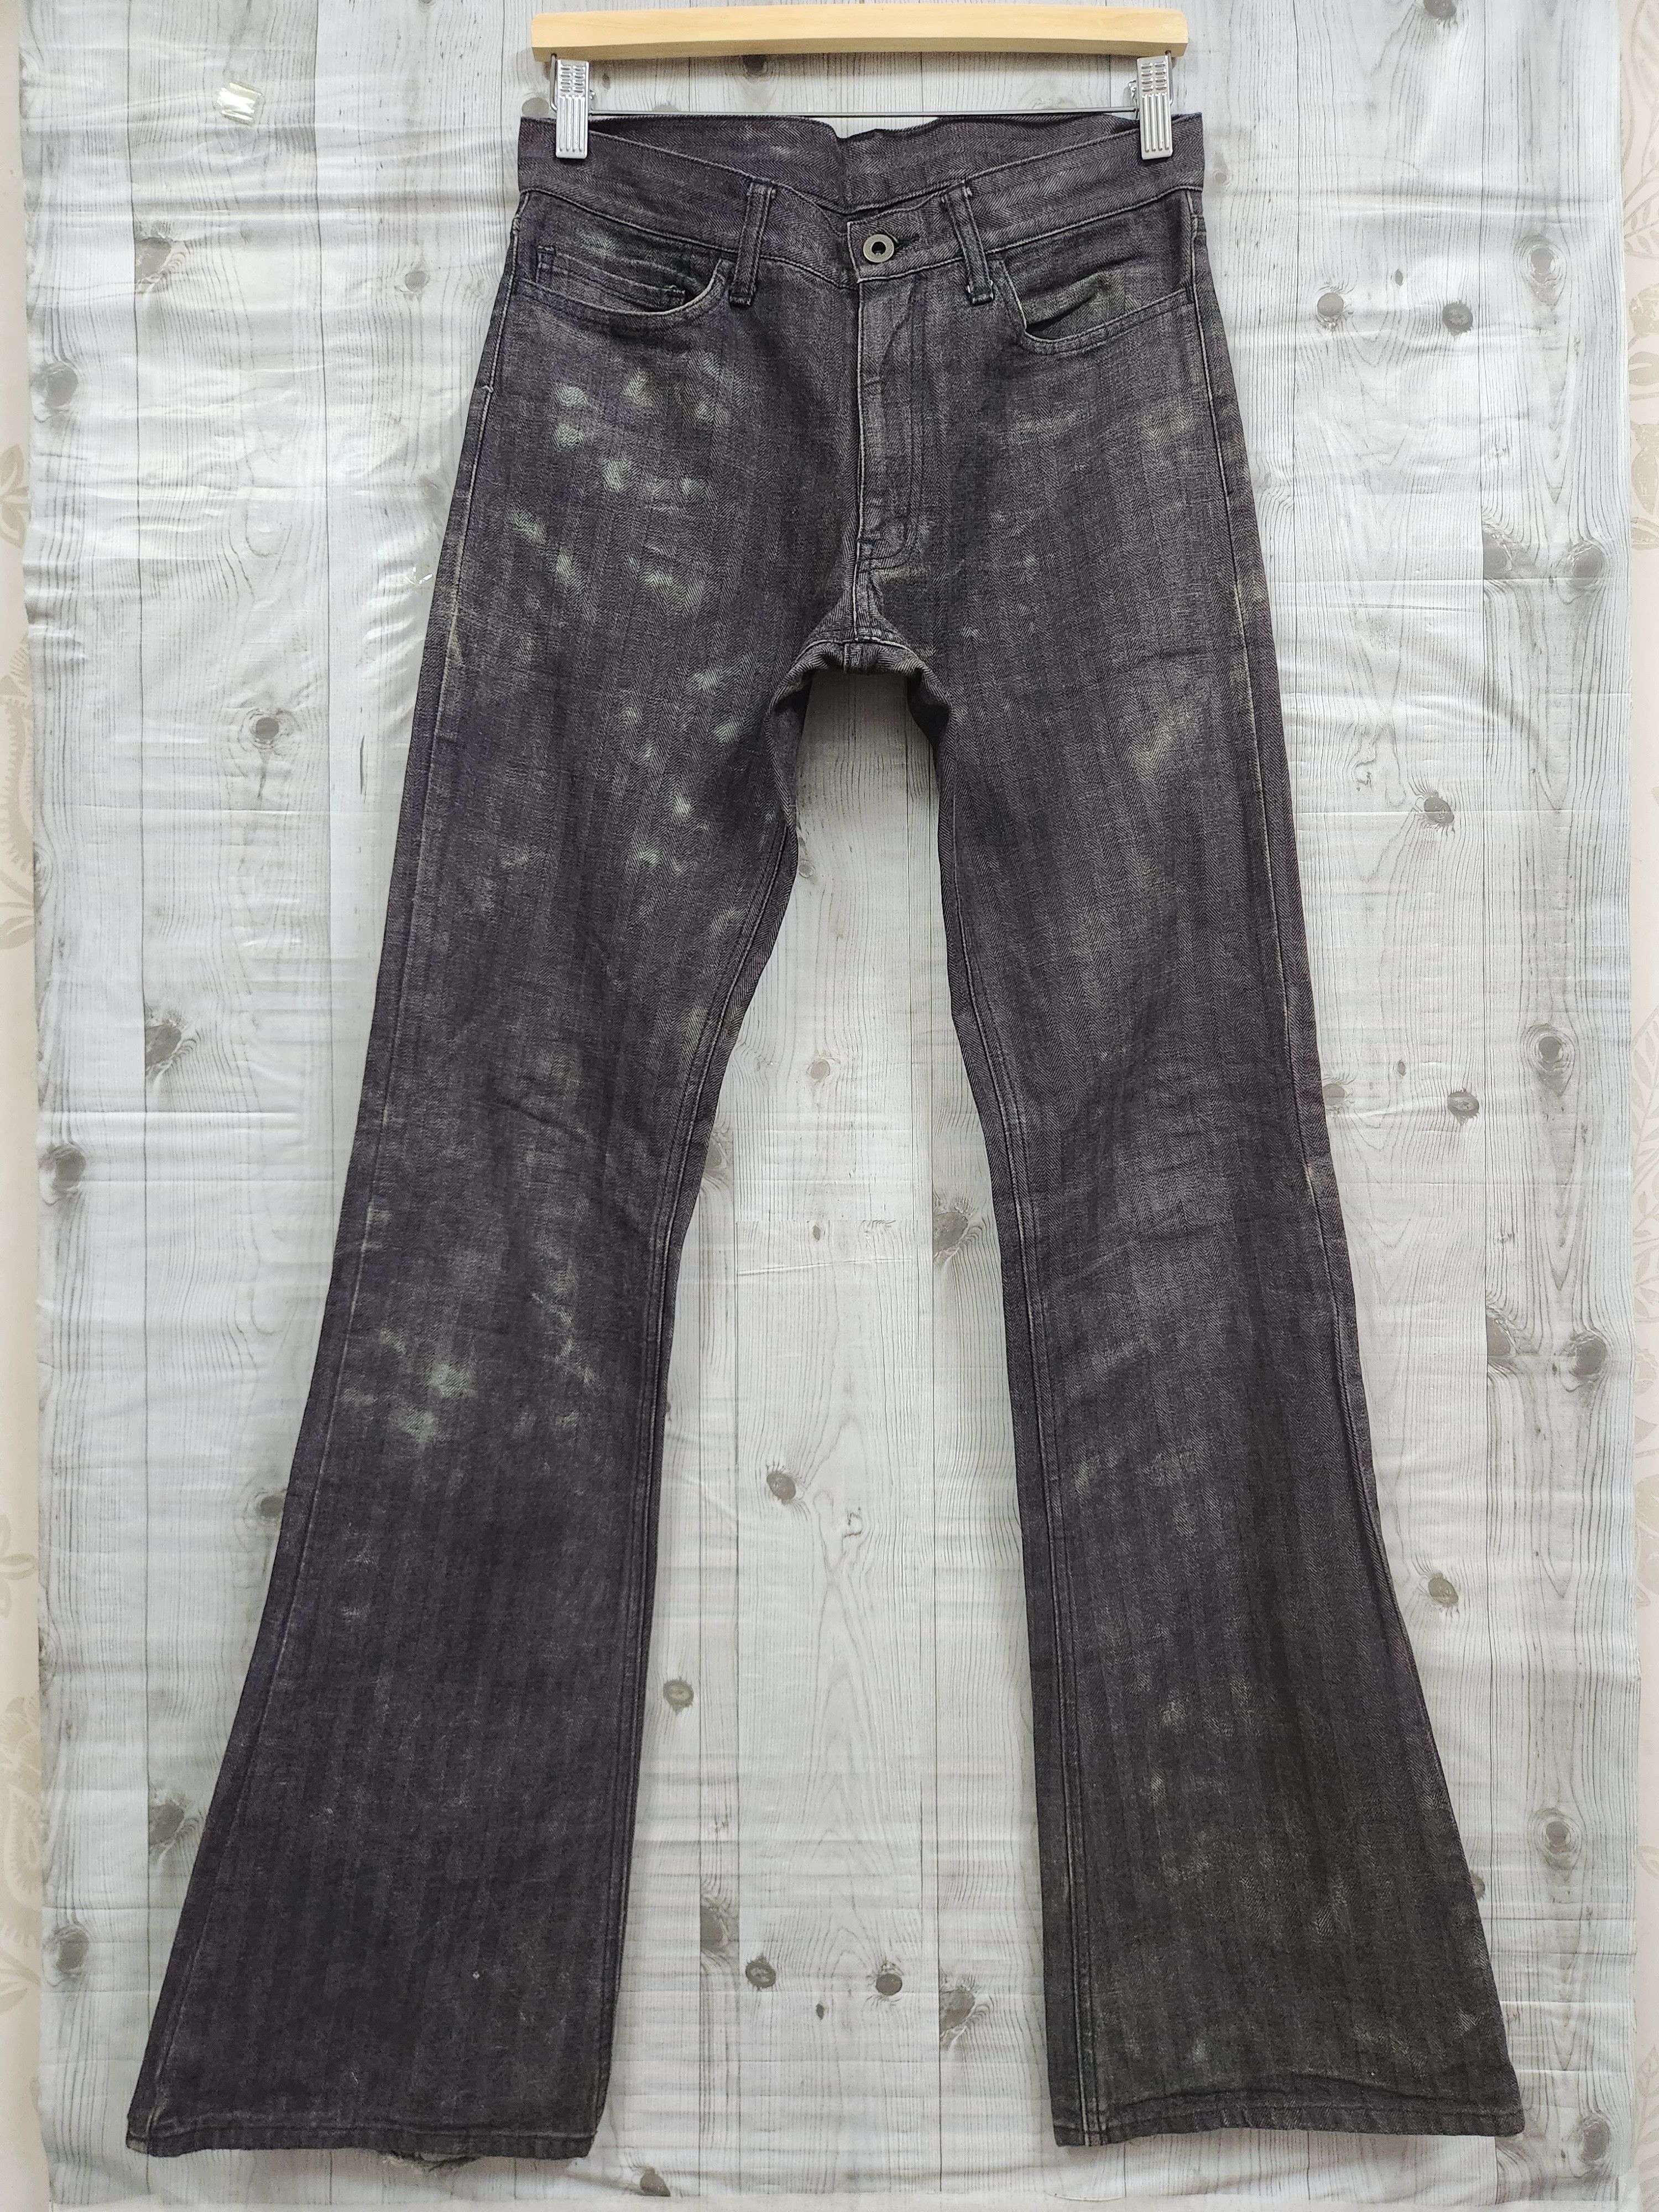 Japanese Brand - Flared Edge Rupert Denim Japan Jeans 70s Style - 1